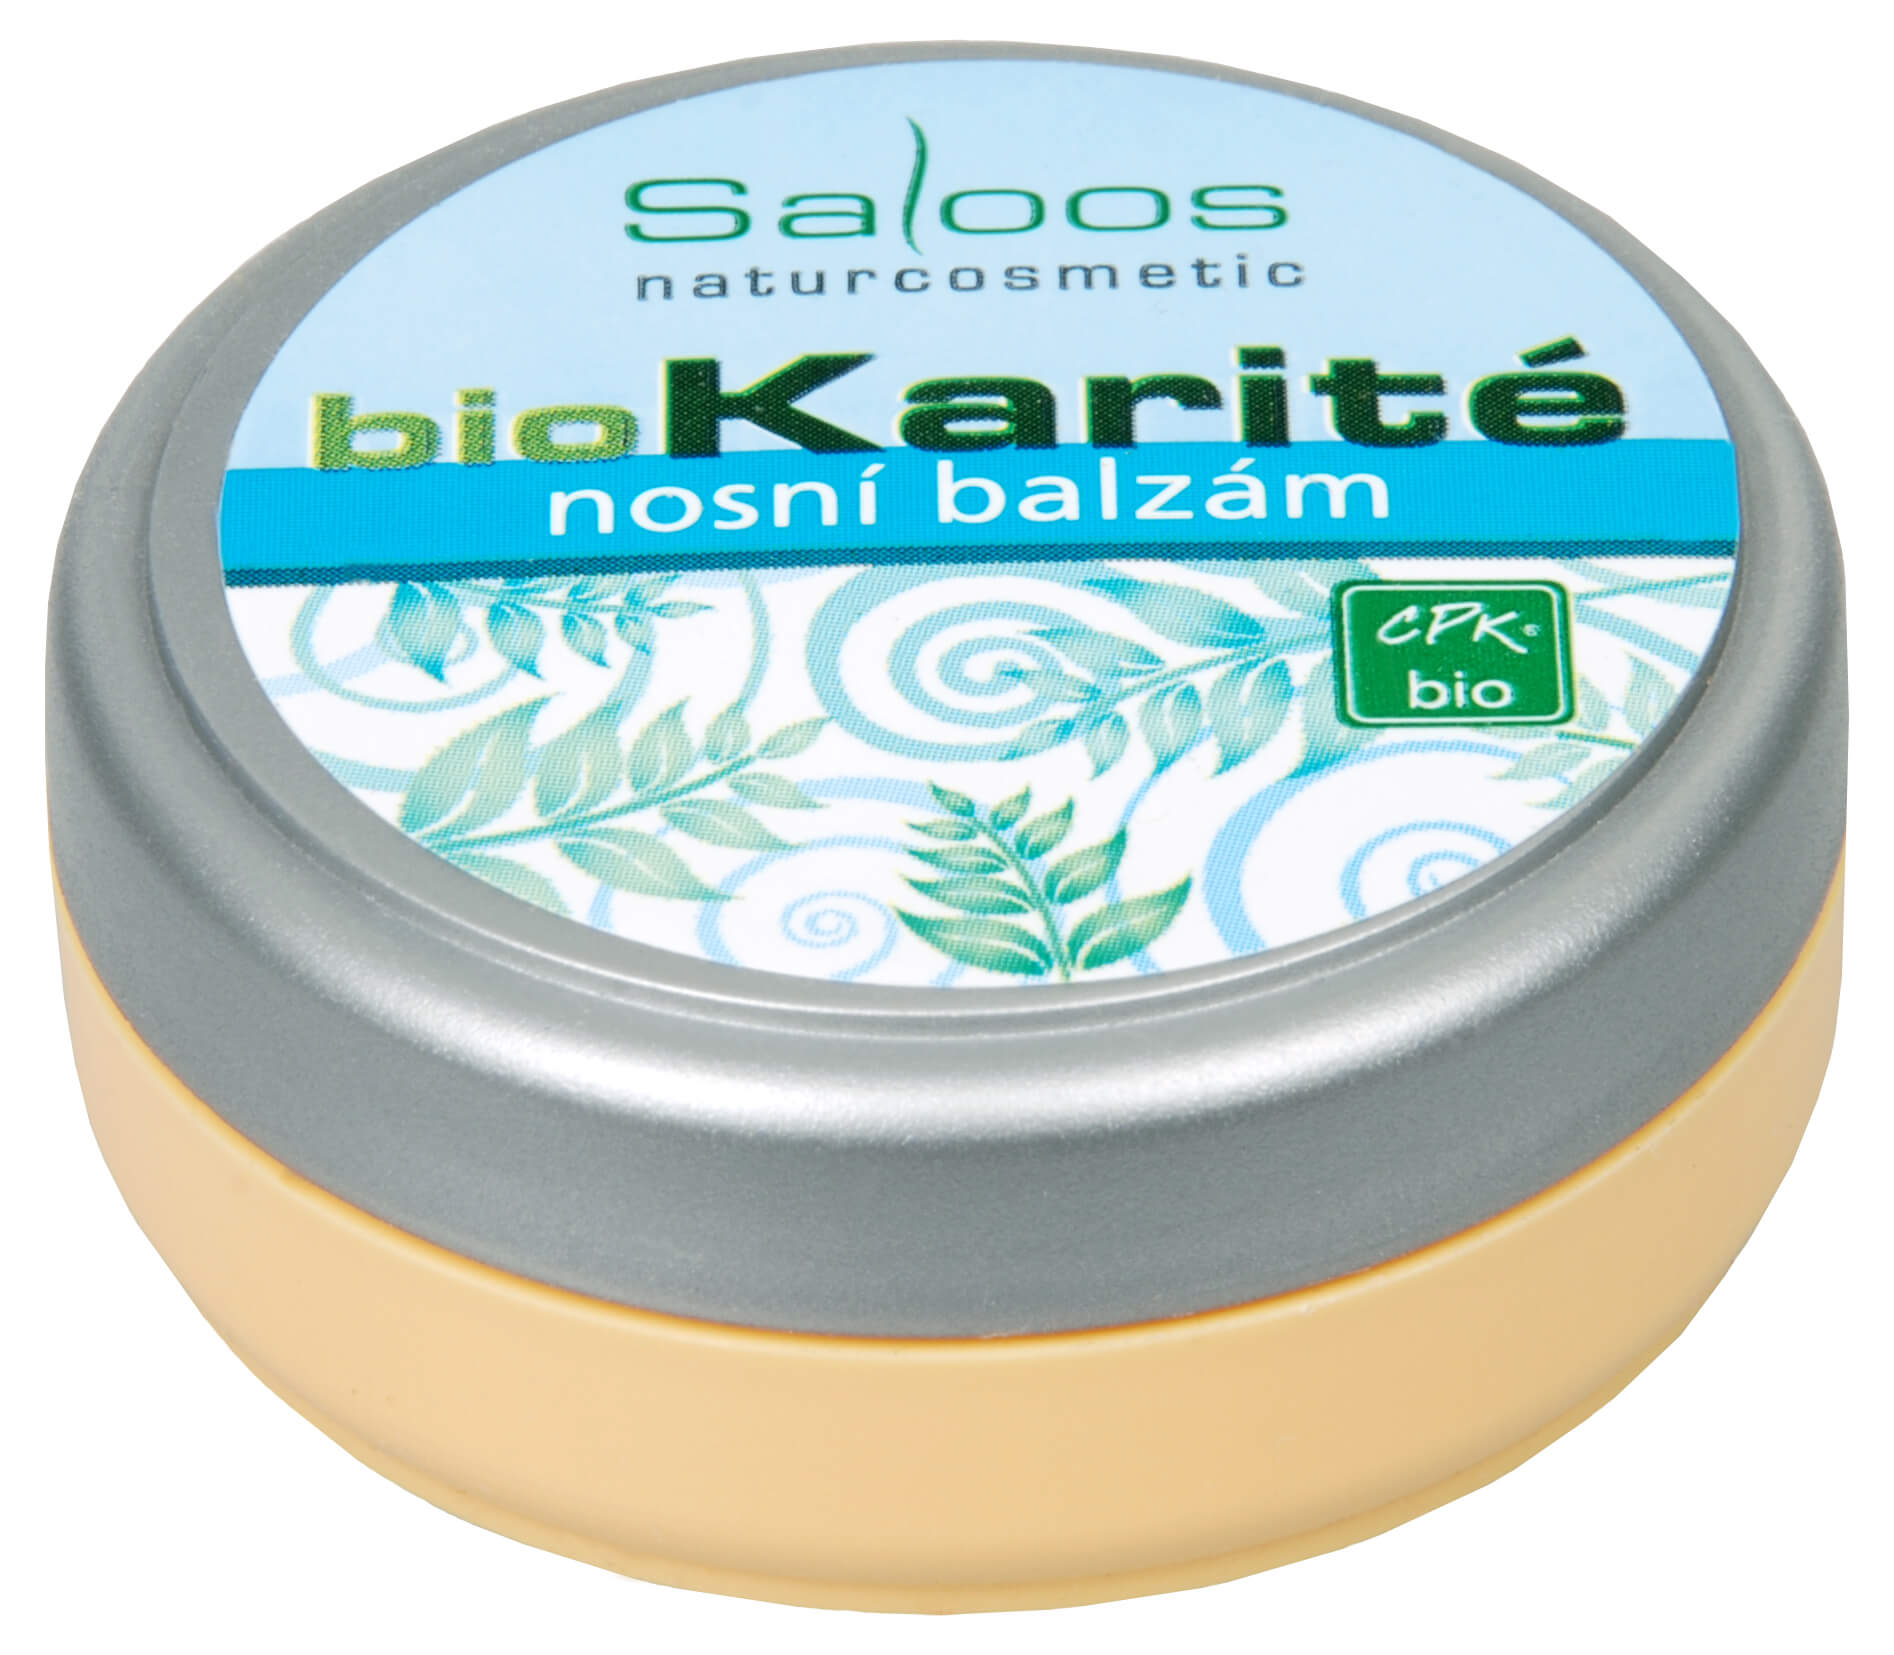 Zobrazit detail výrobku Saloos Bio Karité balzám - Nosní 19 ml + 2 měsíce na vrácení zboží